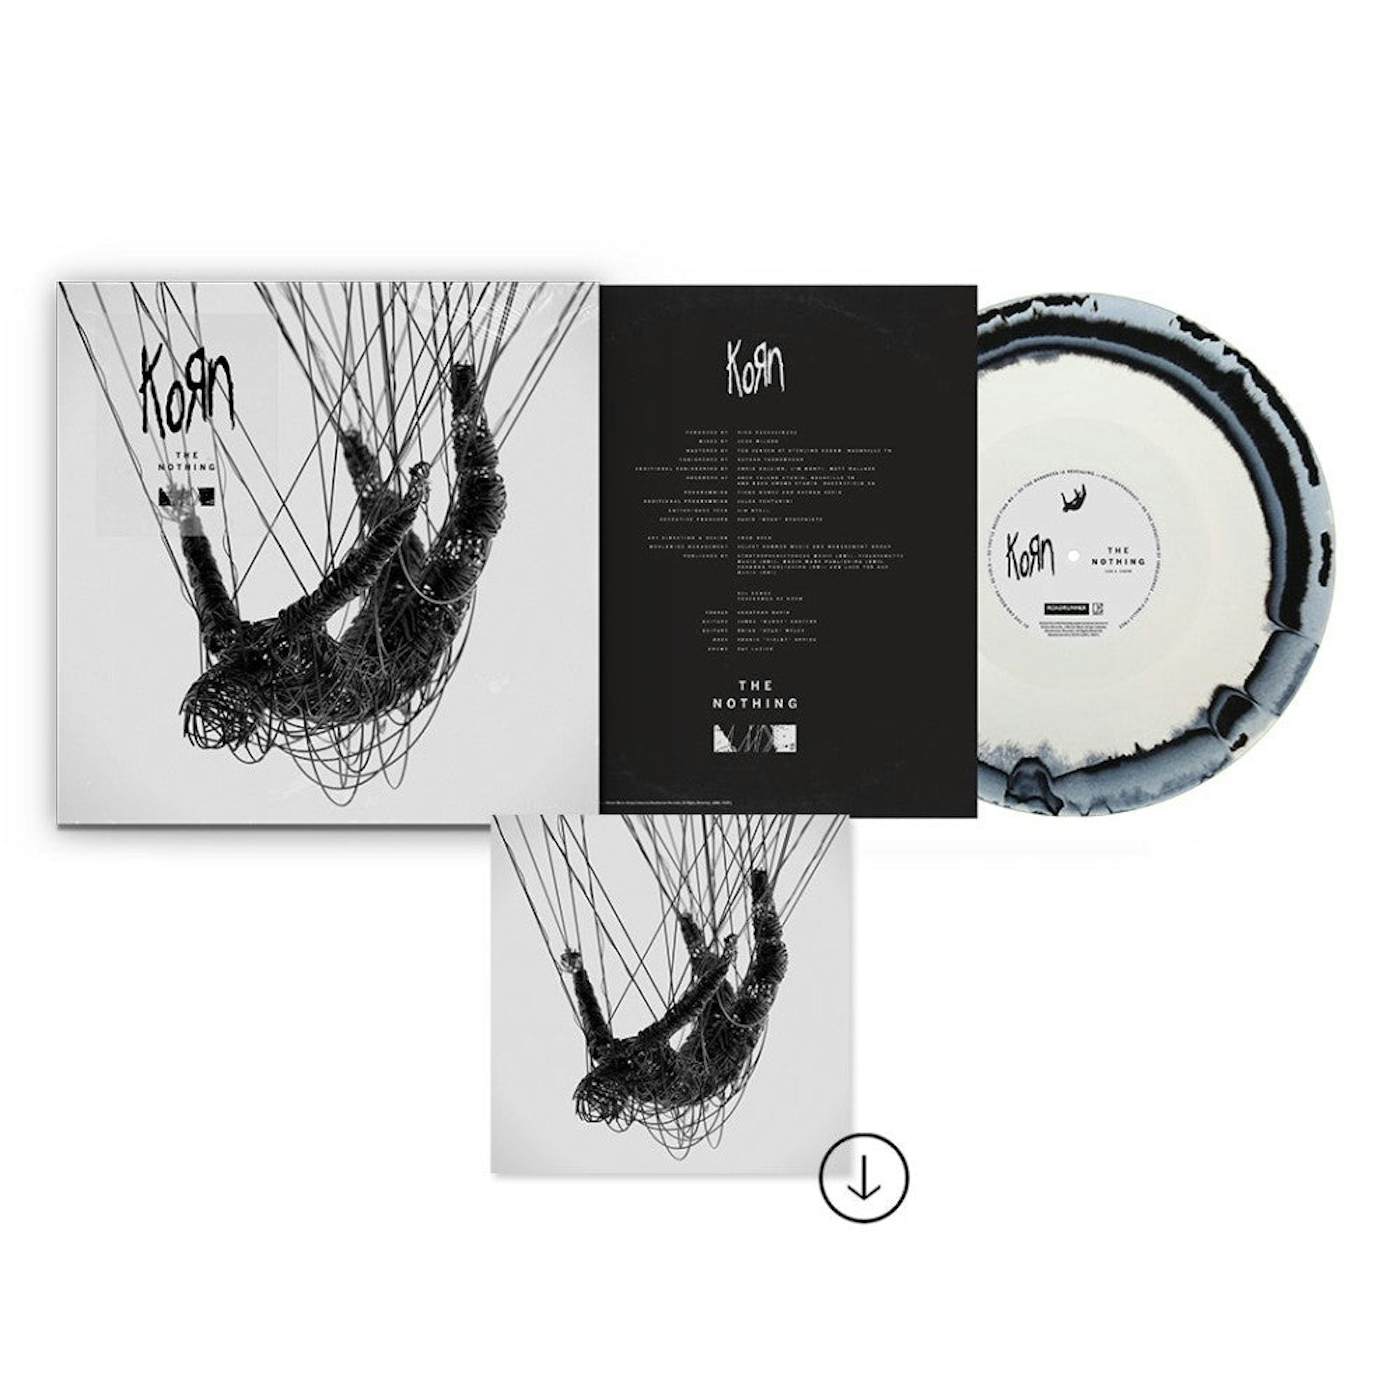 Korn The Nothing: Exclusive Black-White Marble Swirl LP + Digital Bundle (Vinyl)